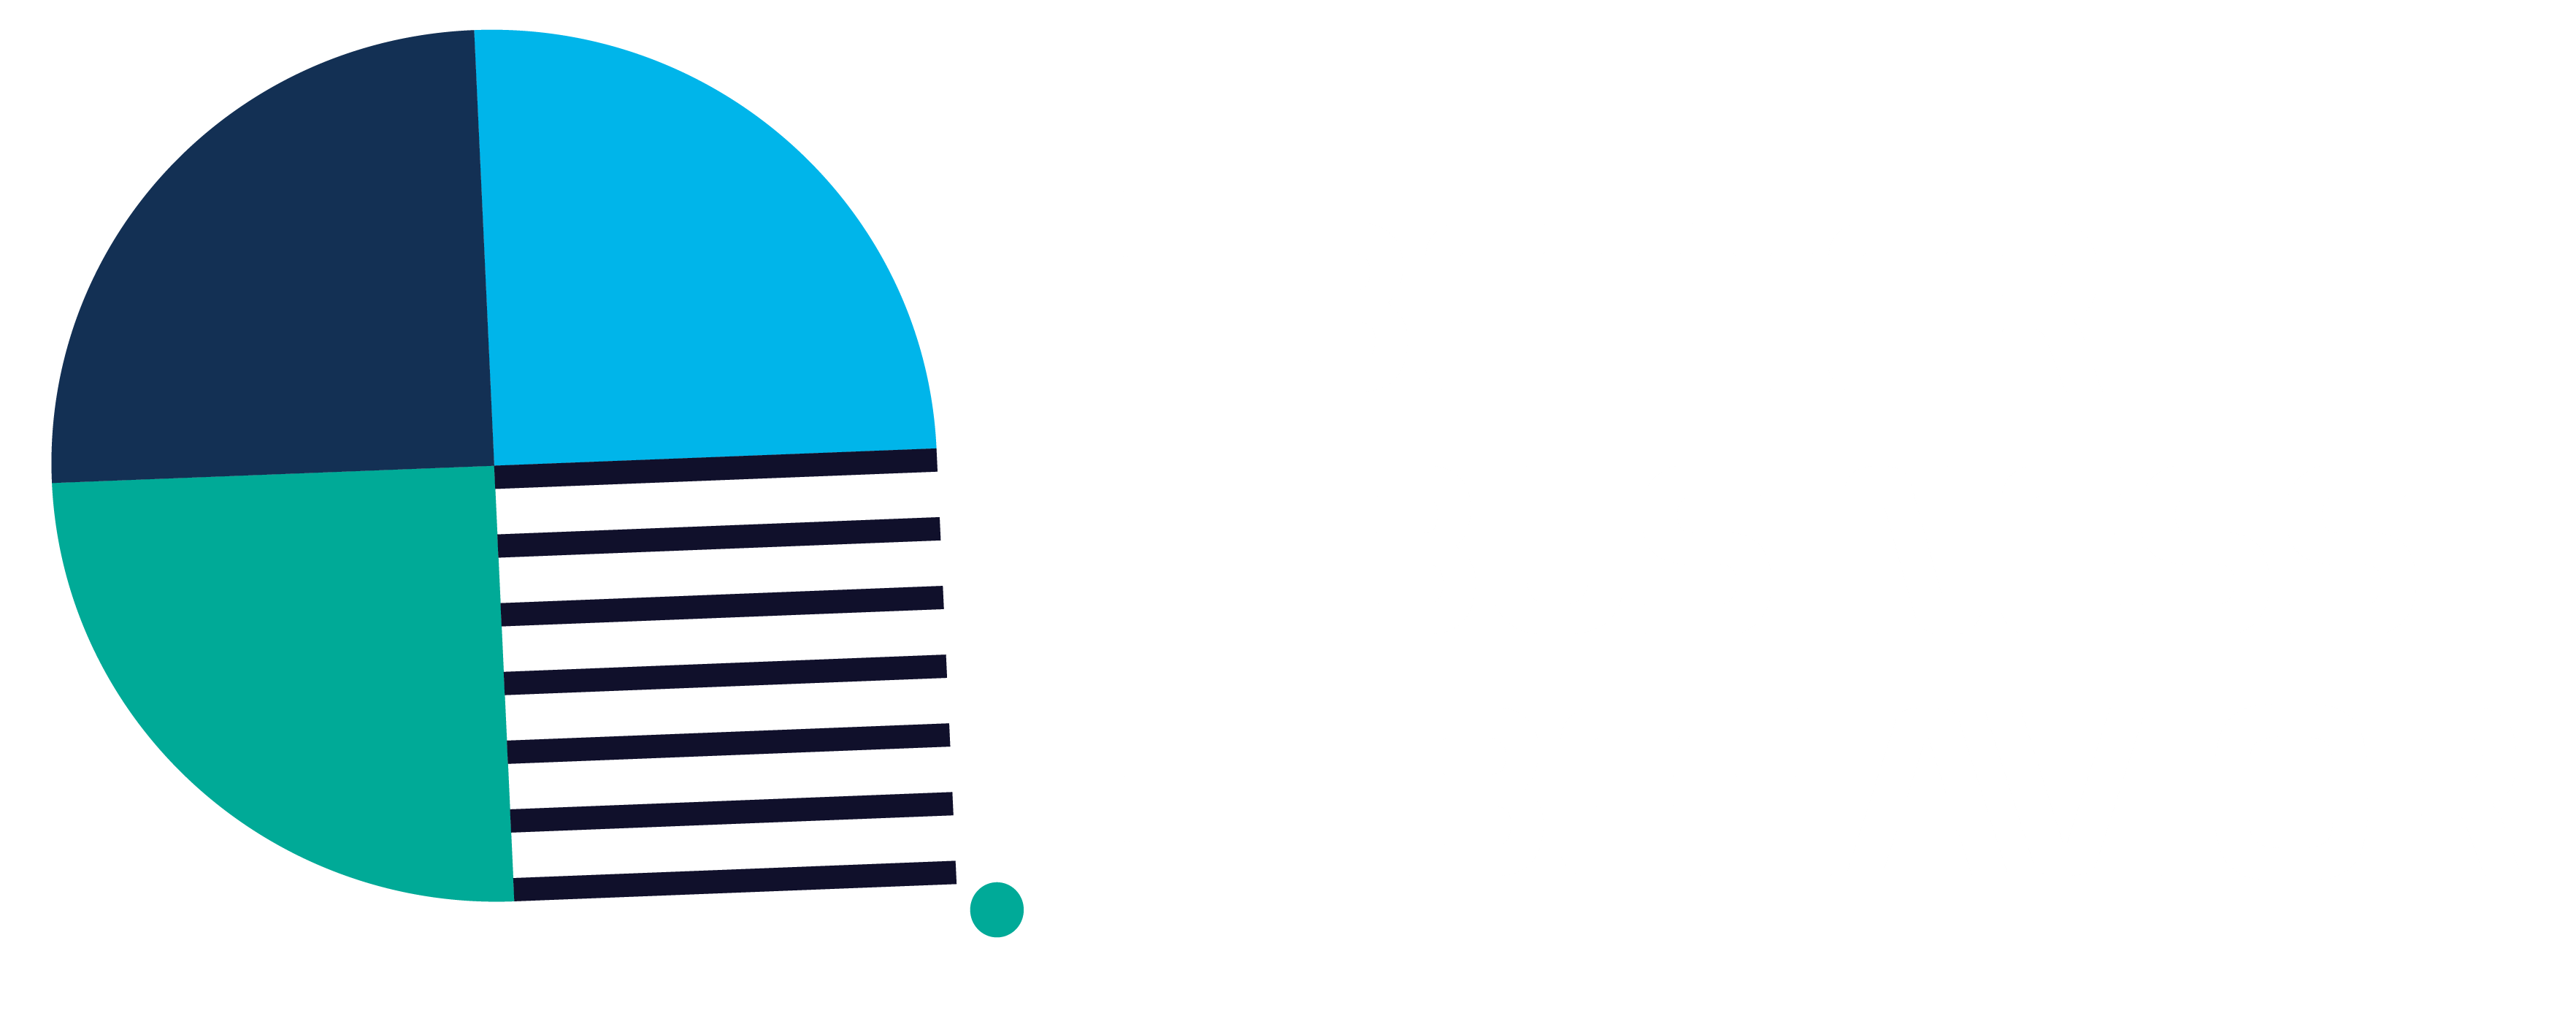 Better Business Behavior